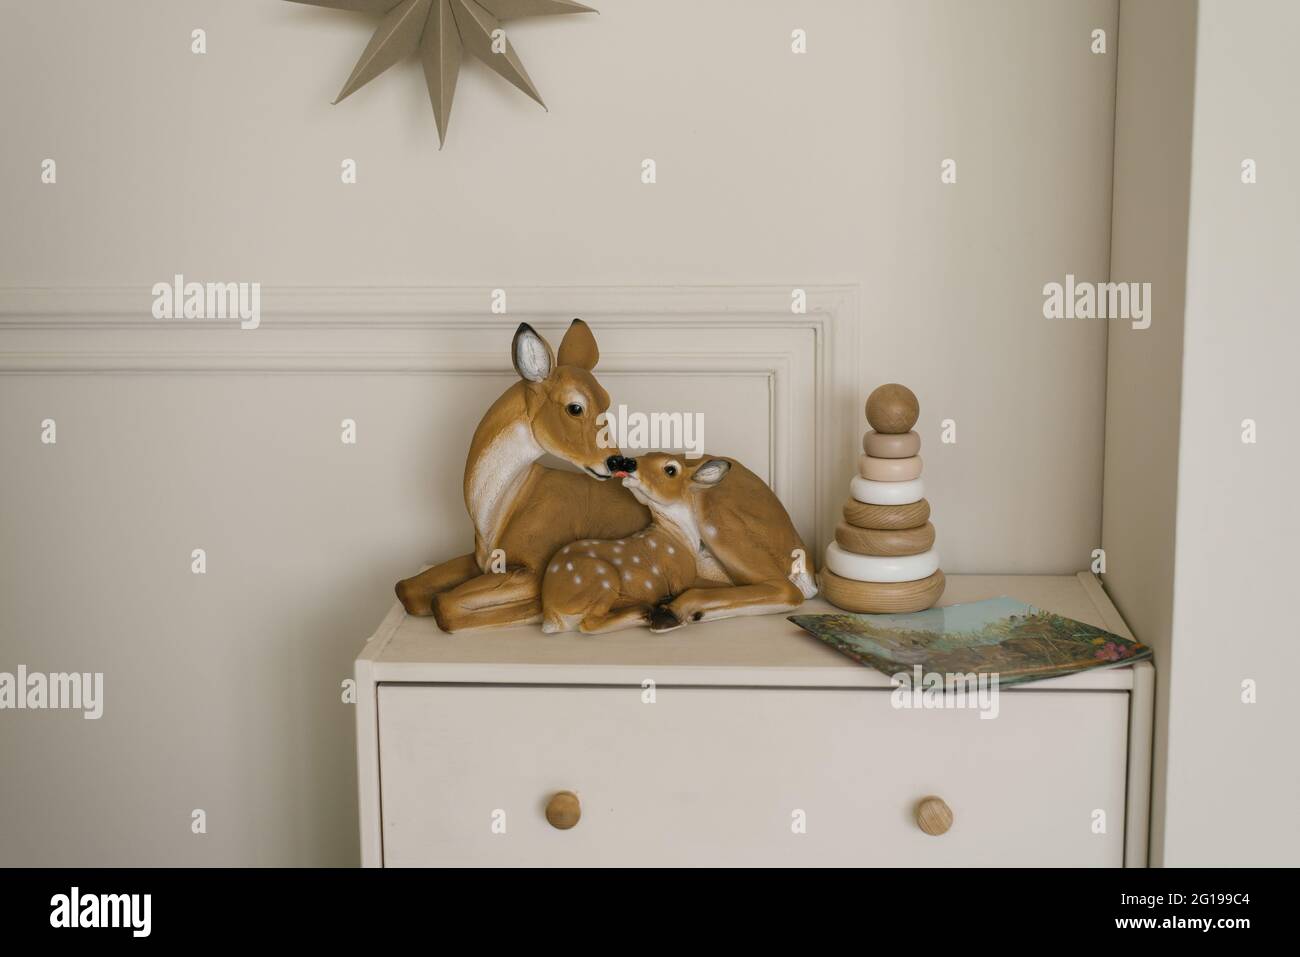 Figuras de ciervo y una pirámide de juguetes de madera para niños en el pecho de los cajones en el interior de la habitación moderna de los niños Foto de stock